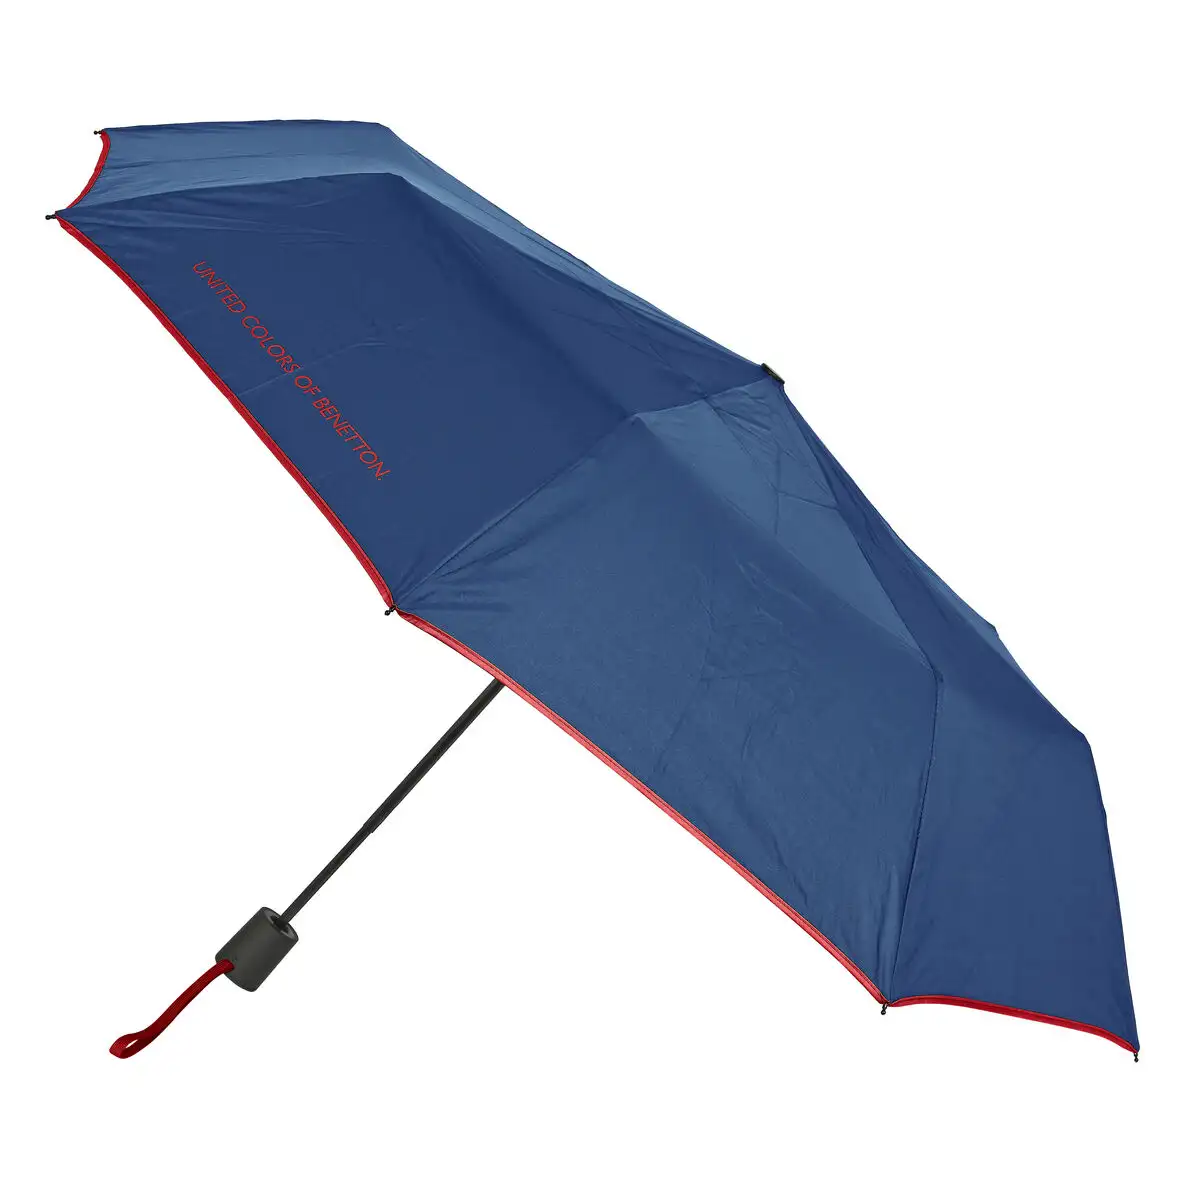 Parapluie pliable benetton blue marine o 93 cm _3778. DIAYTAR SENEGAL - Où Choisir Devient une Expérience Personnalisée. Explorez notre boutique en ligne pour découvrir des produits qui s'adaptent à votre style et à votre essence.